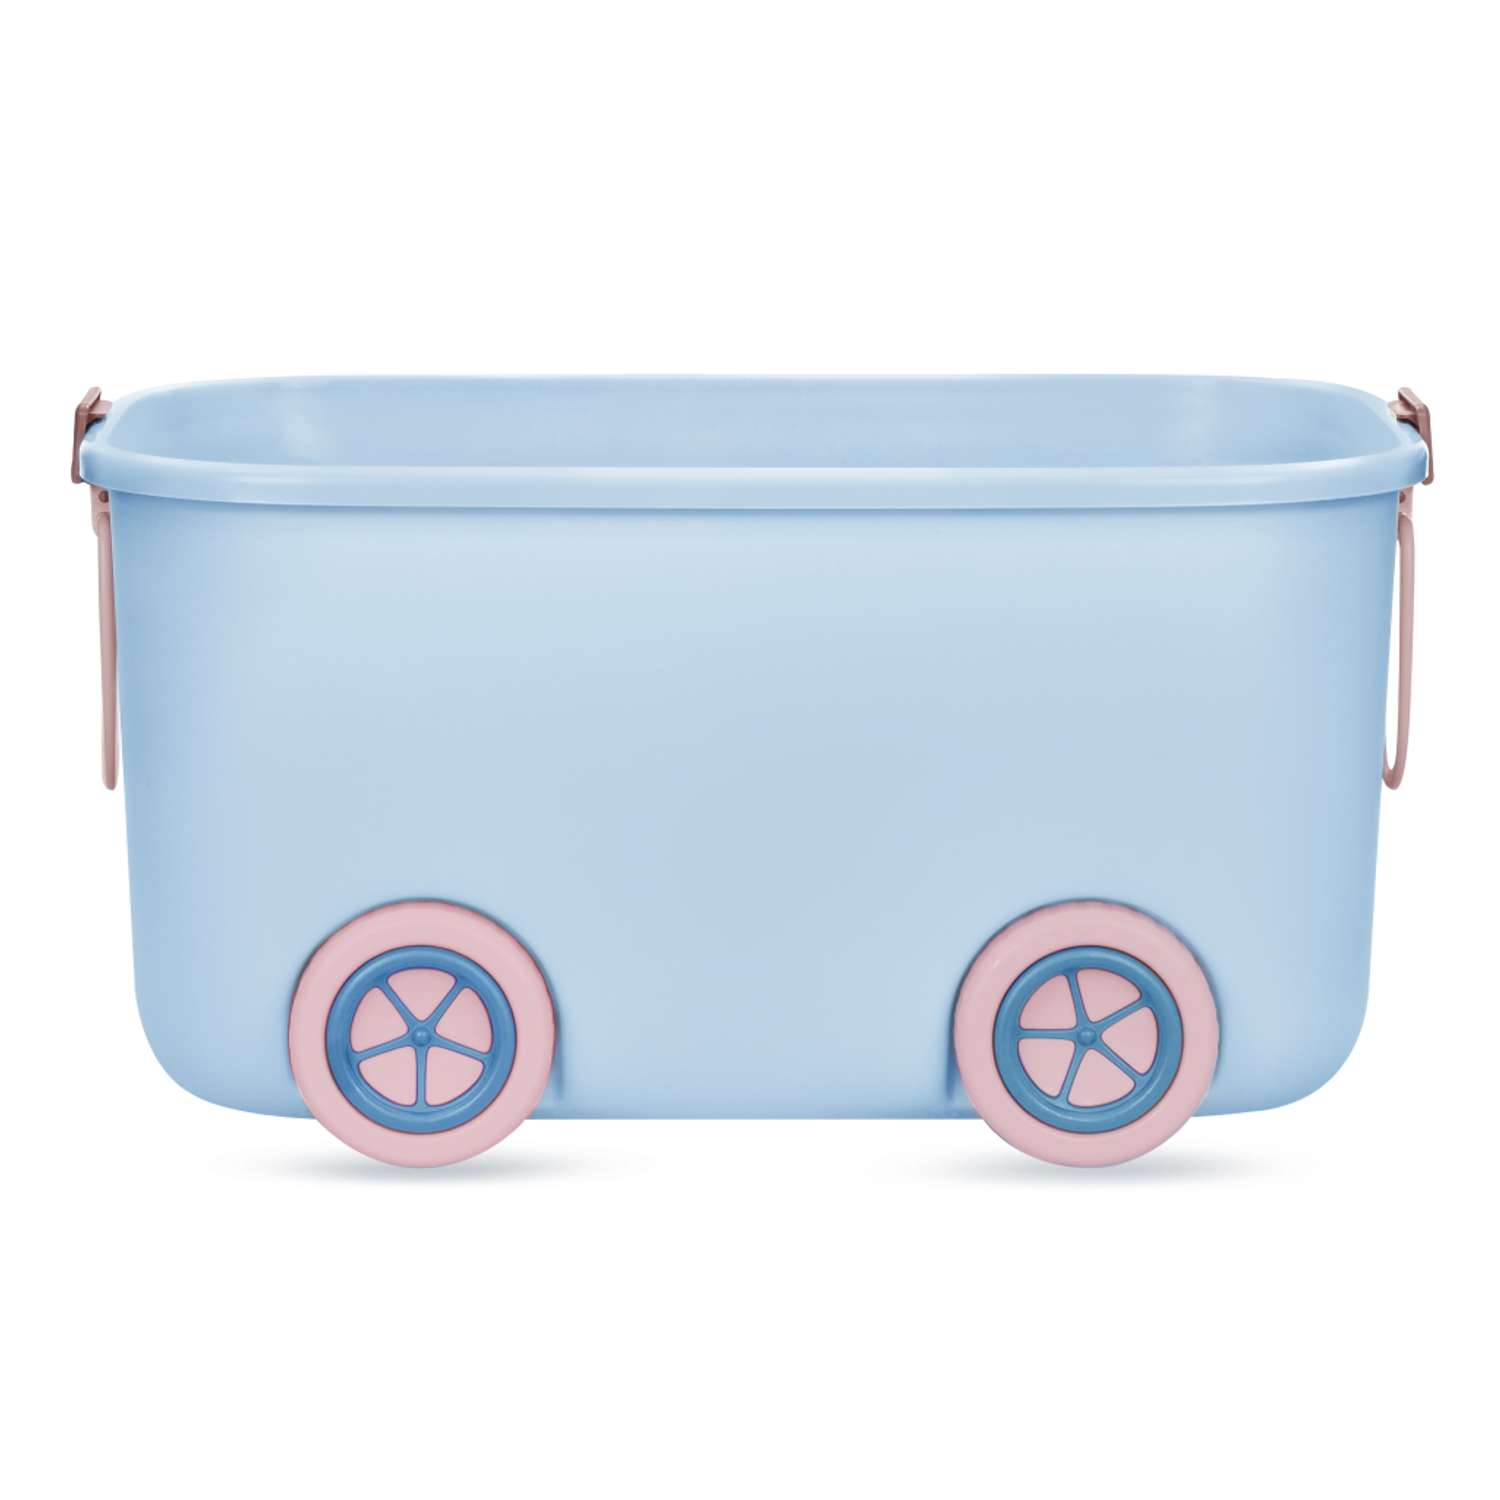 Ящик для хранения игрушек Solmax контейнер на колесиках 54х41.5х38 см голубой - фото 9